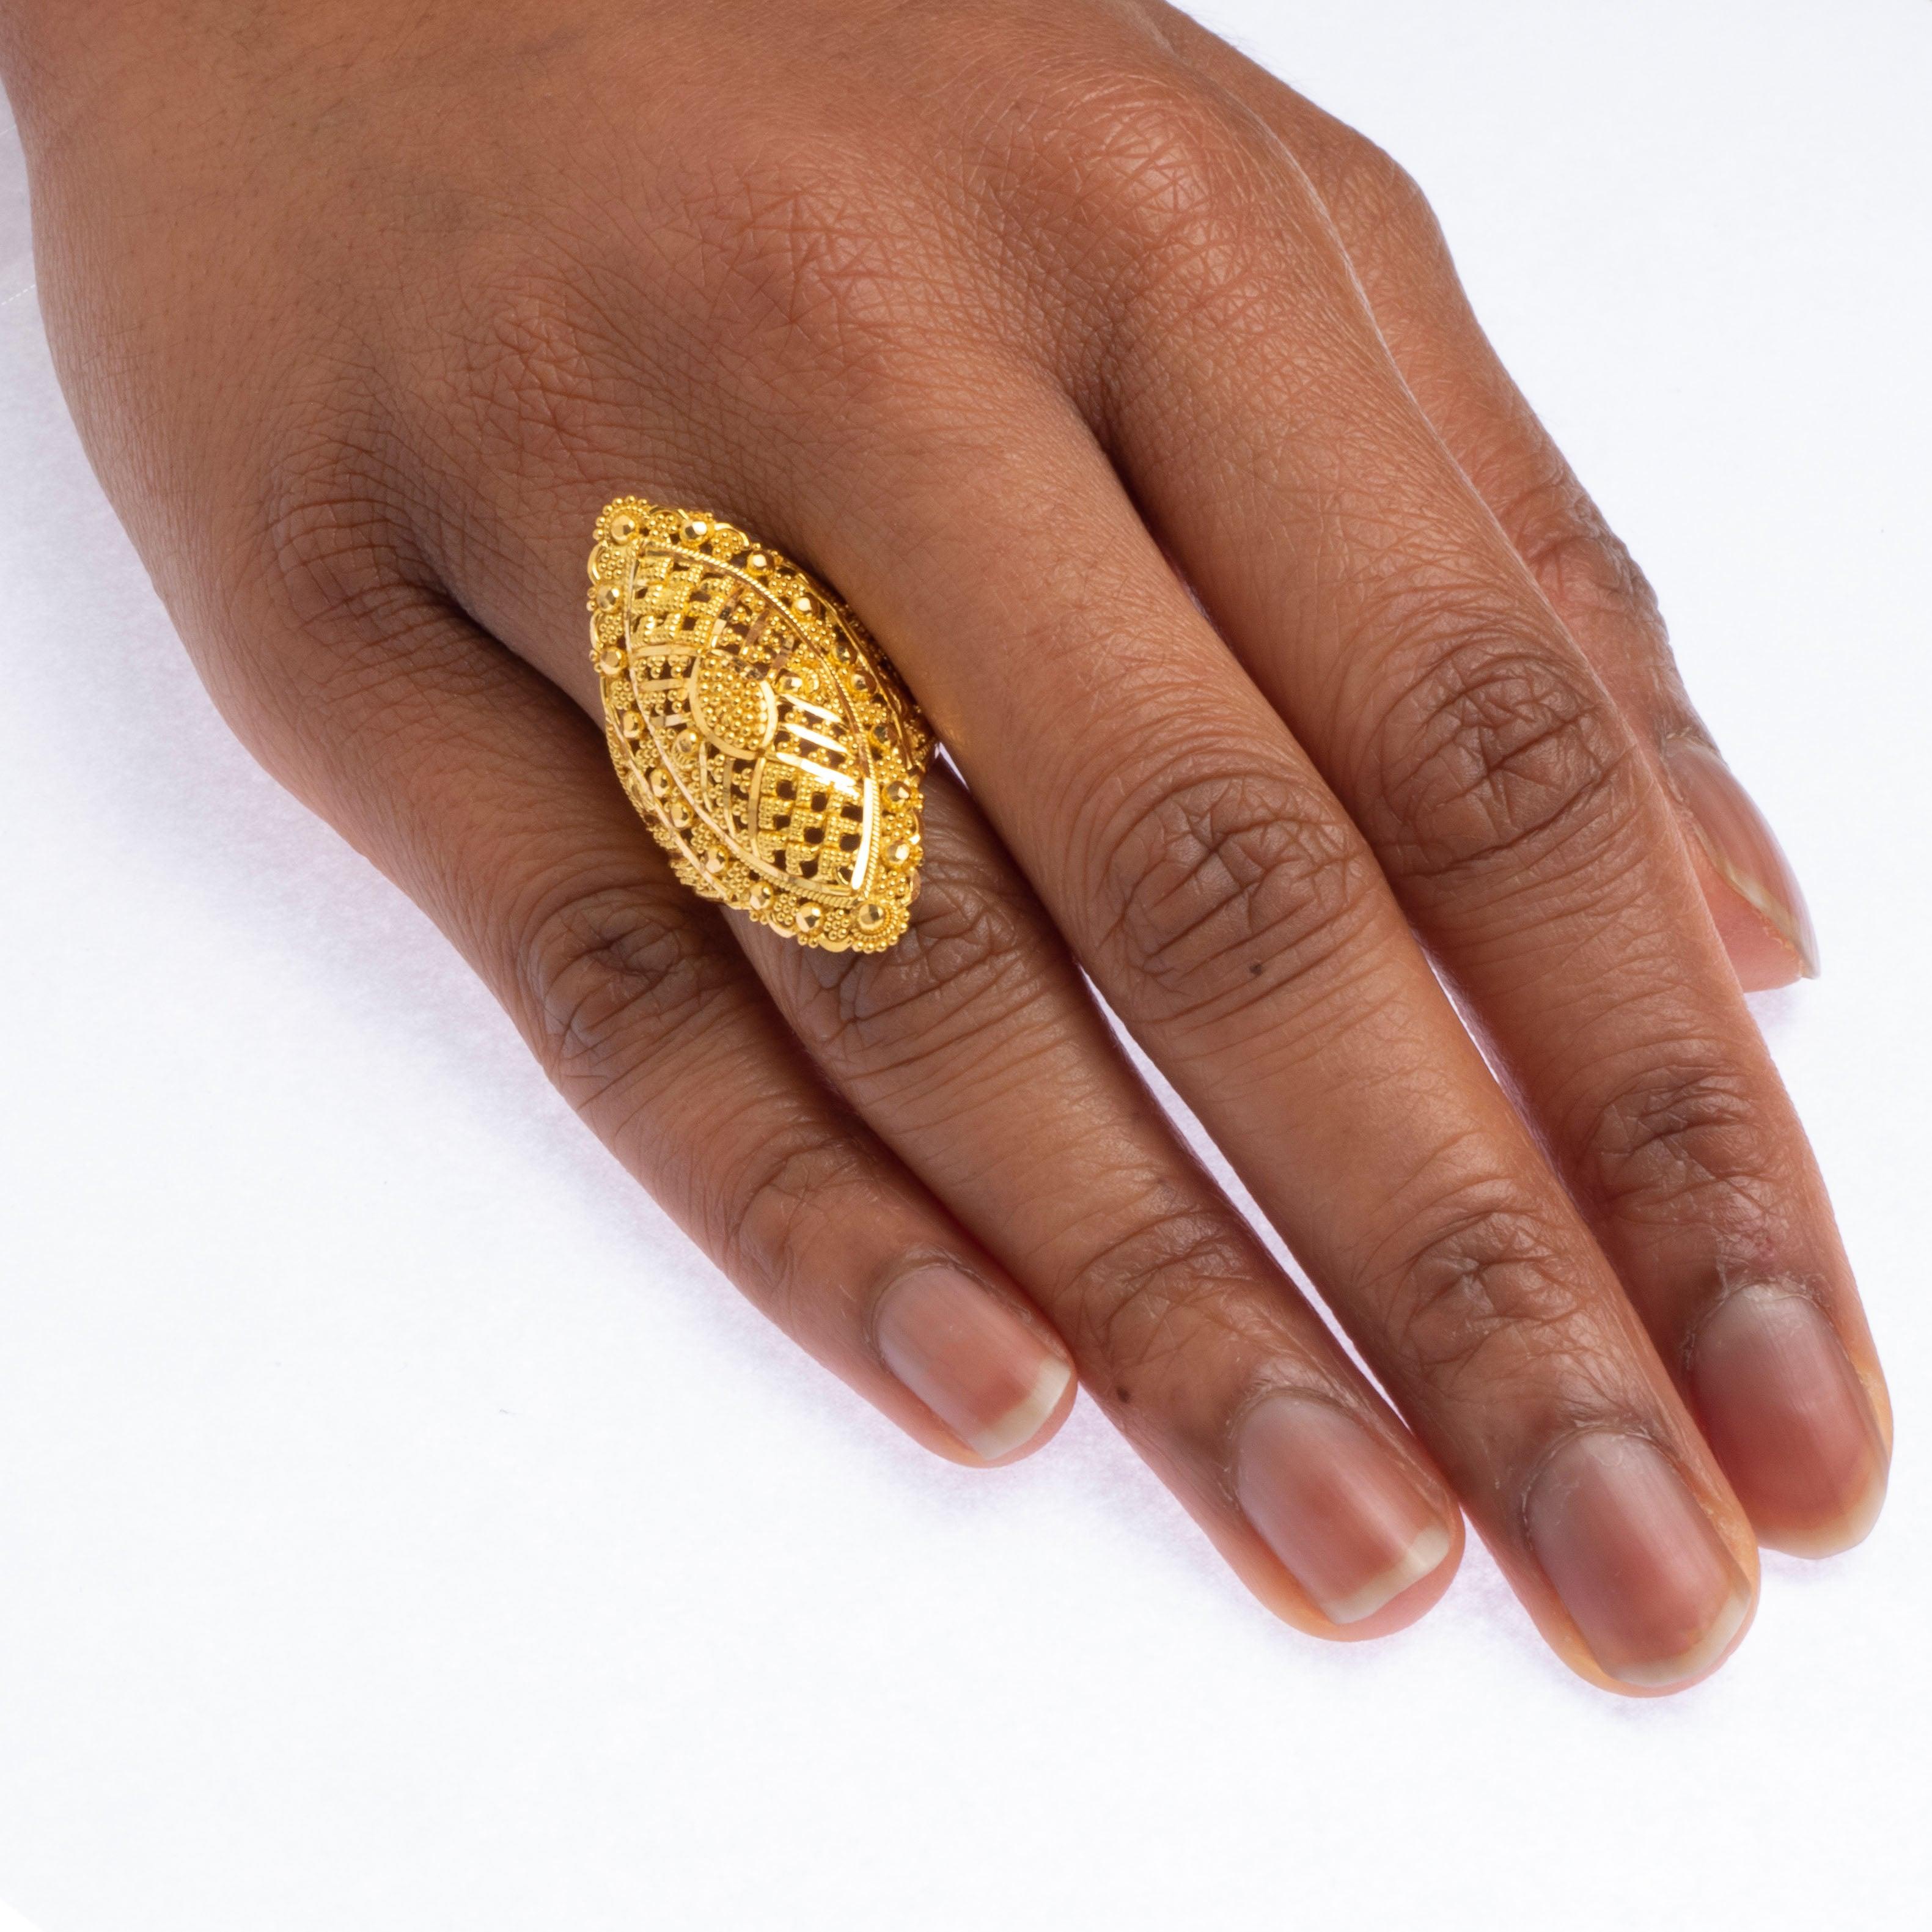 22ct Gold Filigree Dress Ring LR-7818 - Minar Jewellers